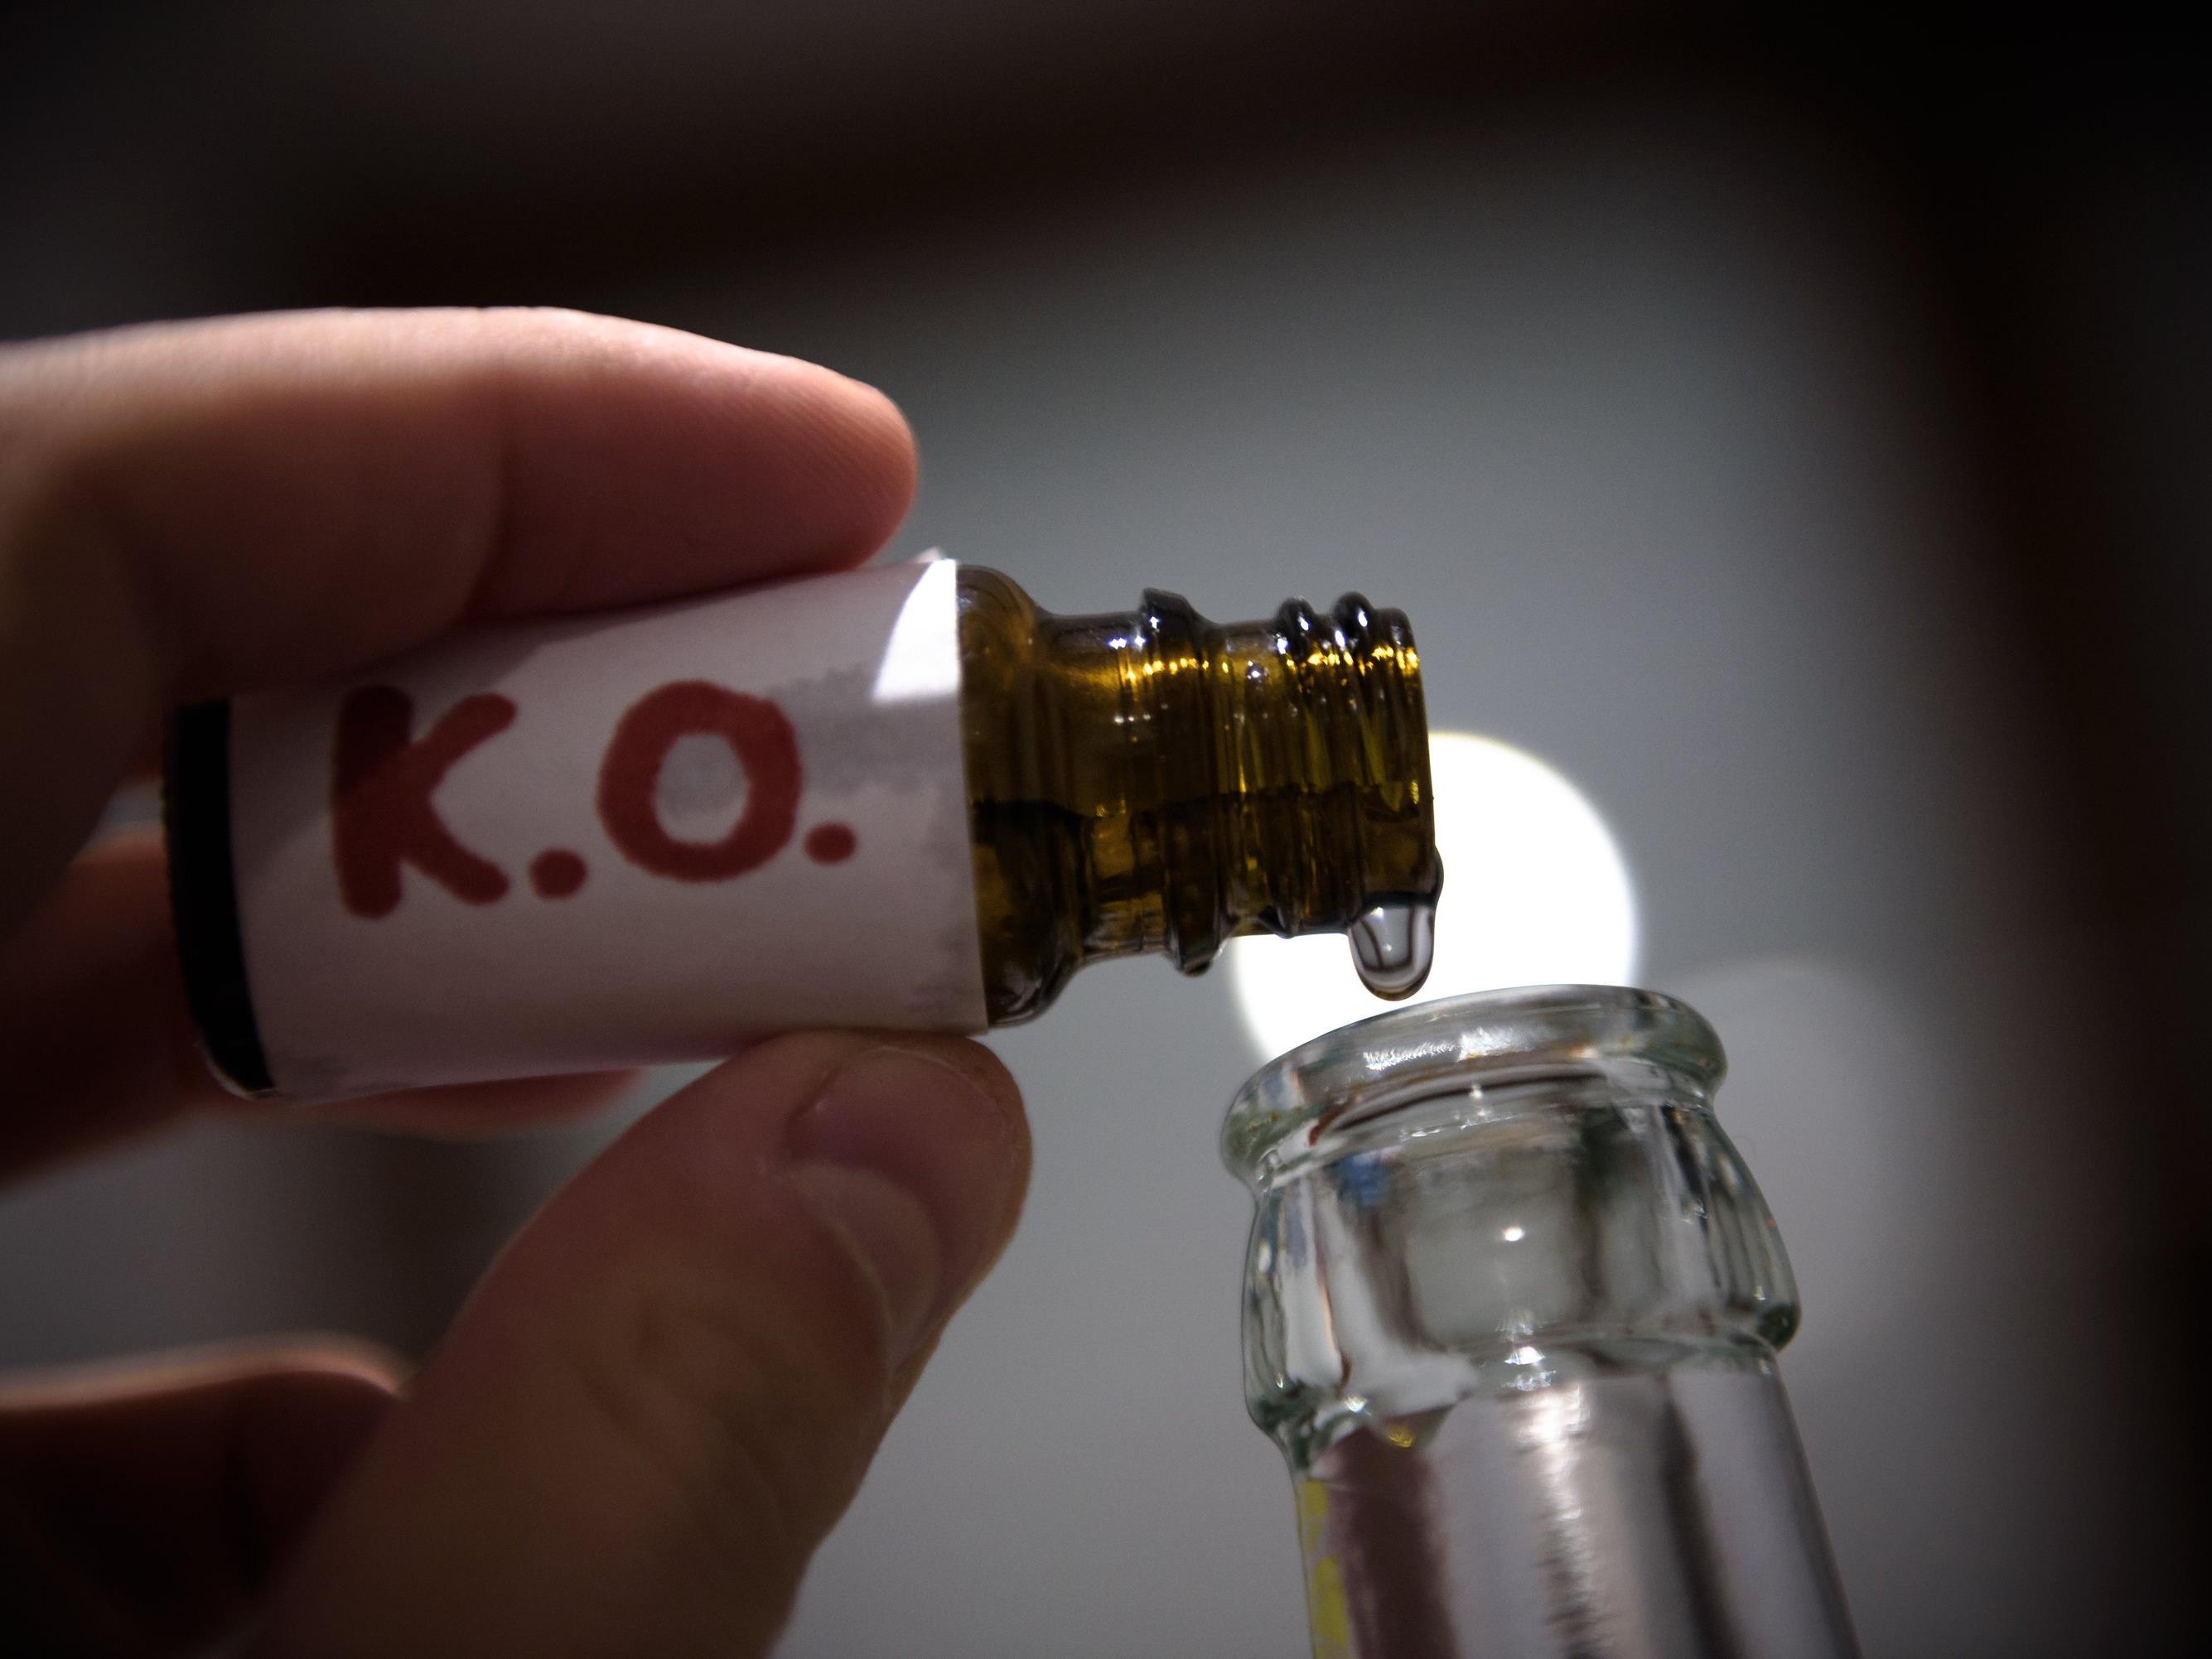 K.o.-Tropfen - Mehr Anzeigen bei Straftaten mit Betäubungsmitteln